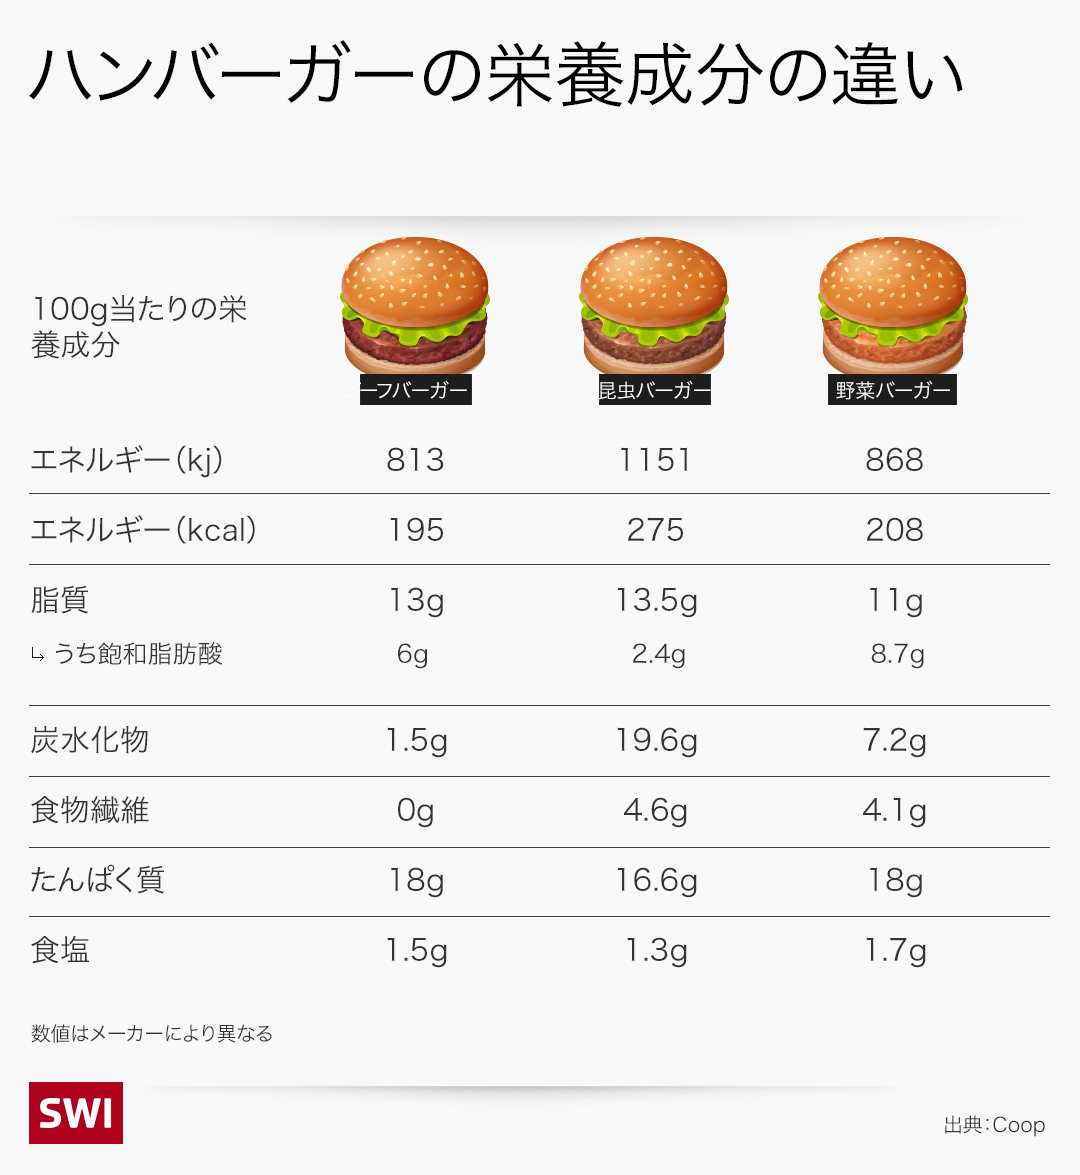 植物性バーガーと一般のバーガーの栄養成分比較